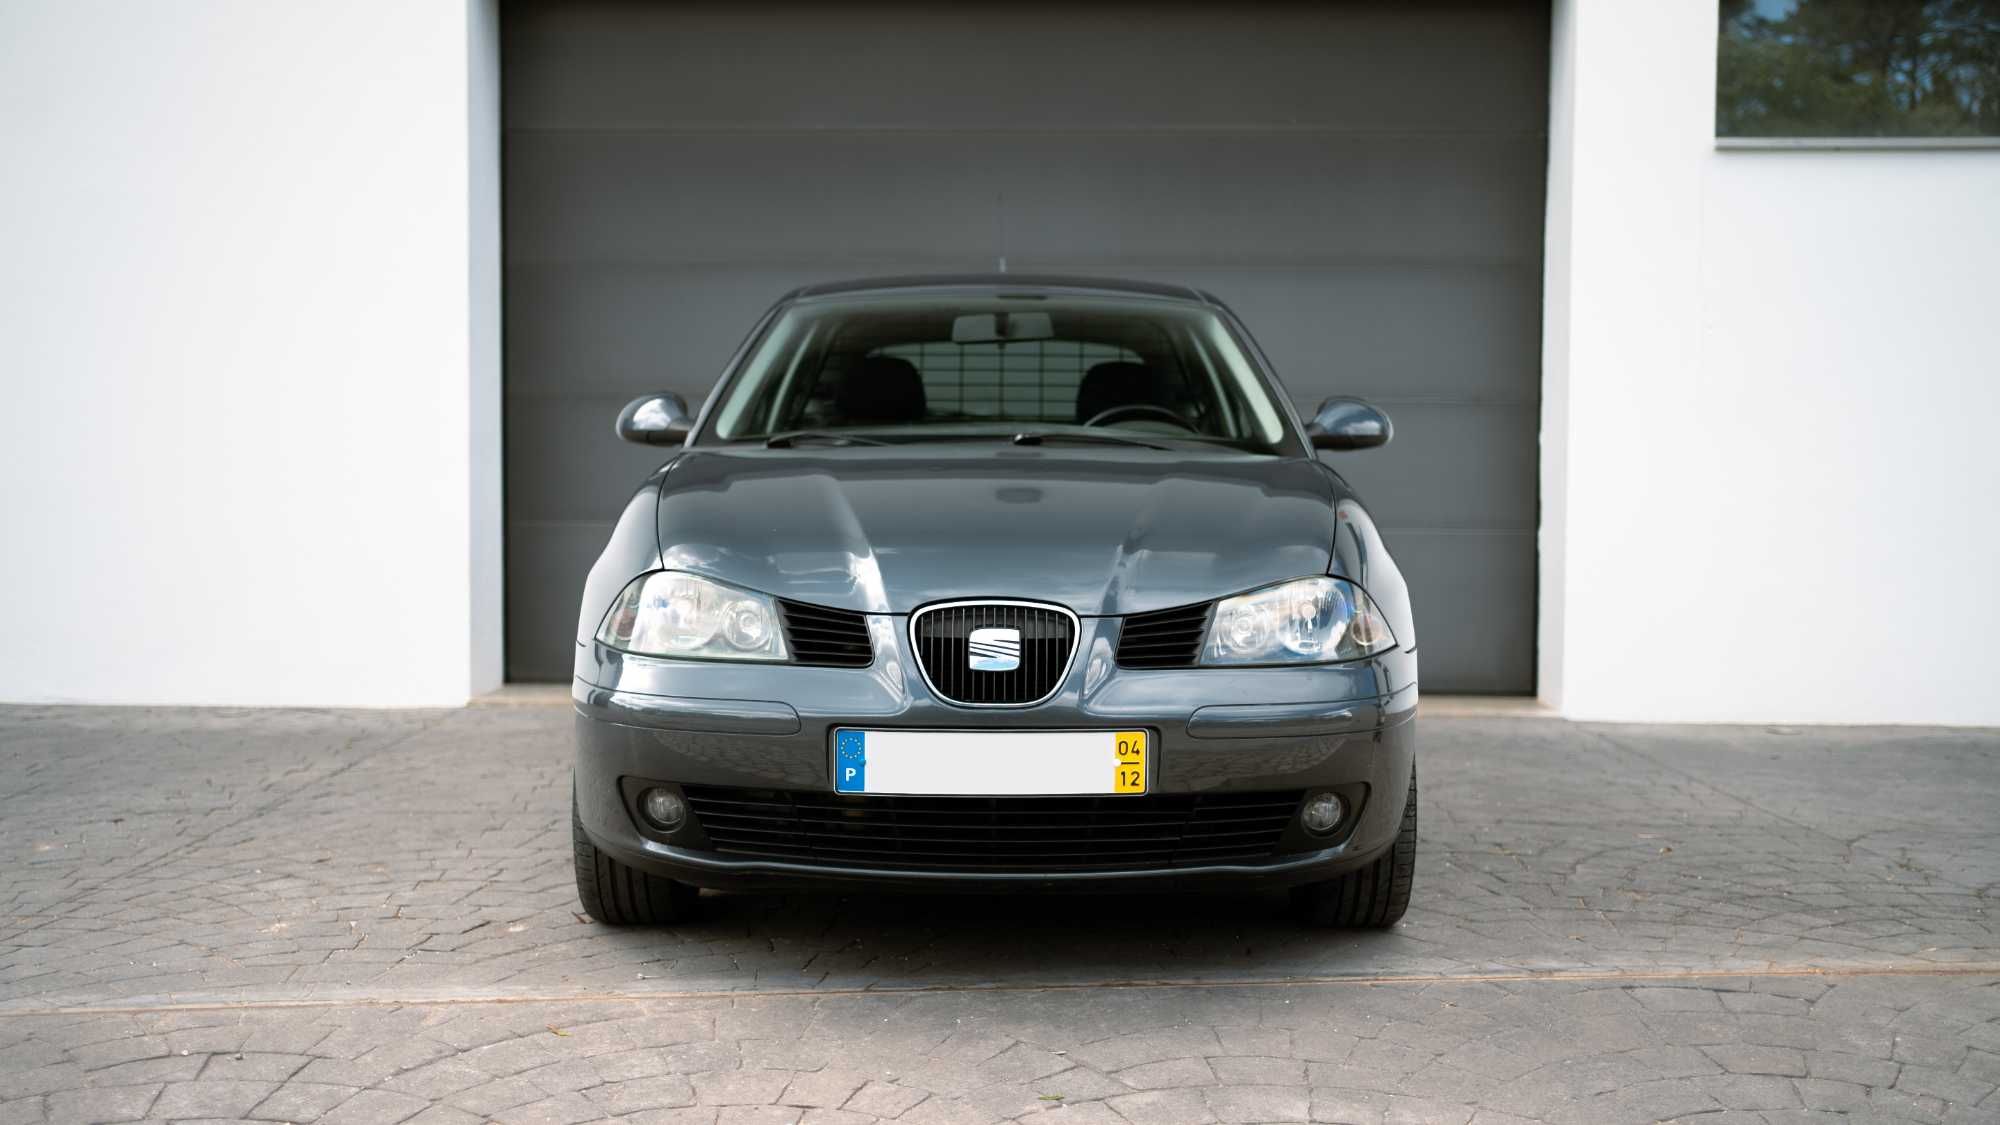 Seat Ibiza 6L Sport - 1.9 TDI 130cv